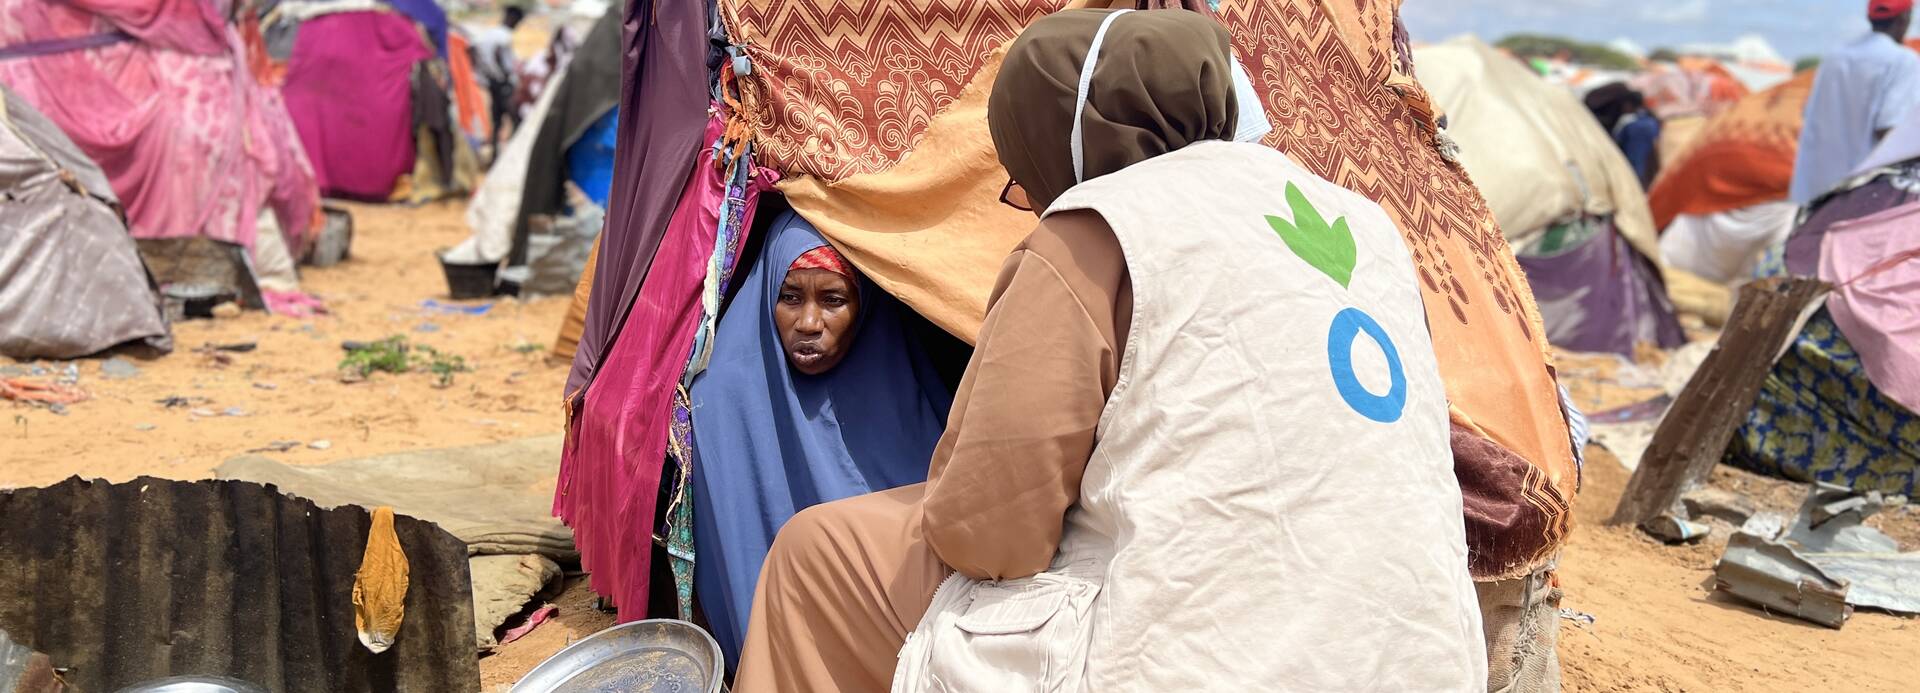 Eine Mitarbeiterin von Aktion gegen den Hunger spricht mit einer Frau aus Somalia, die aufgrund der Dürre im Land flüchten musste.